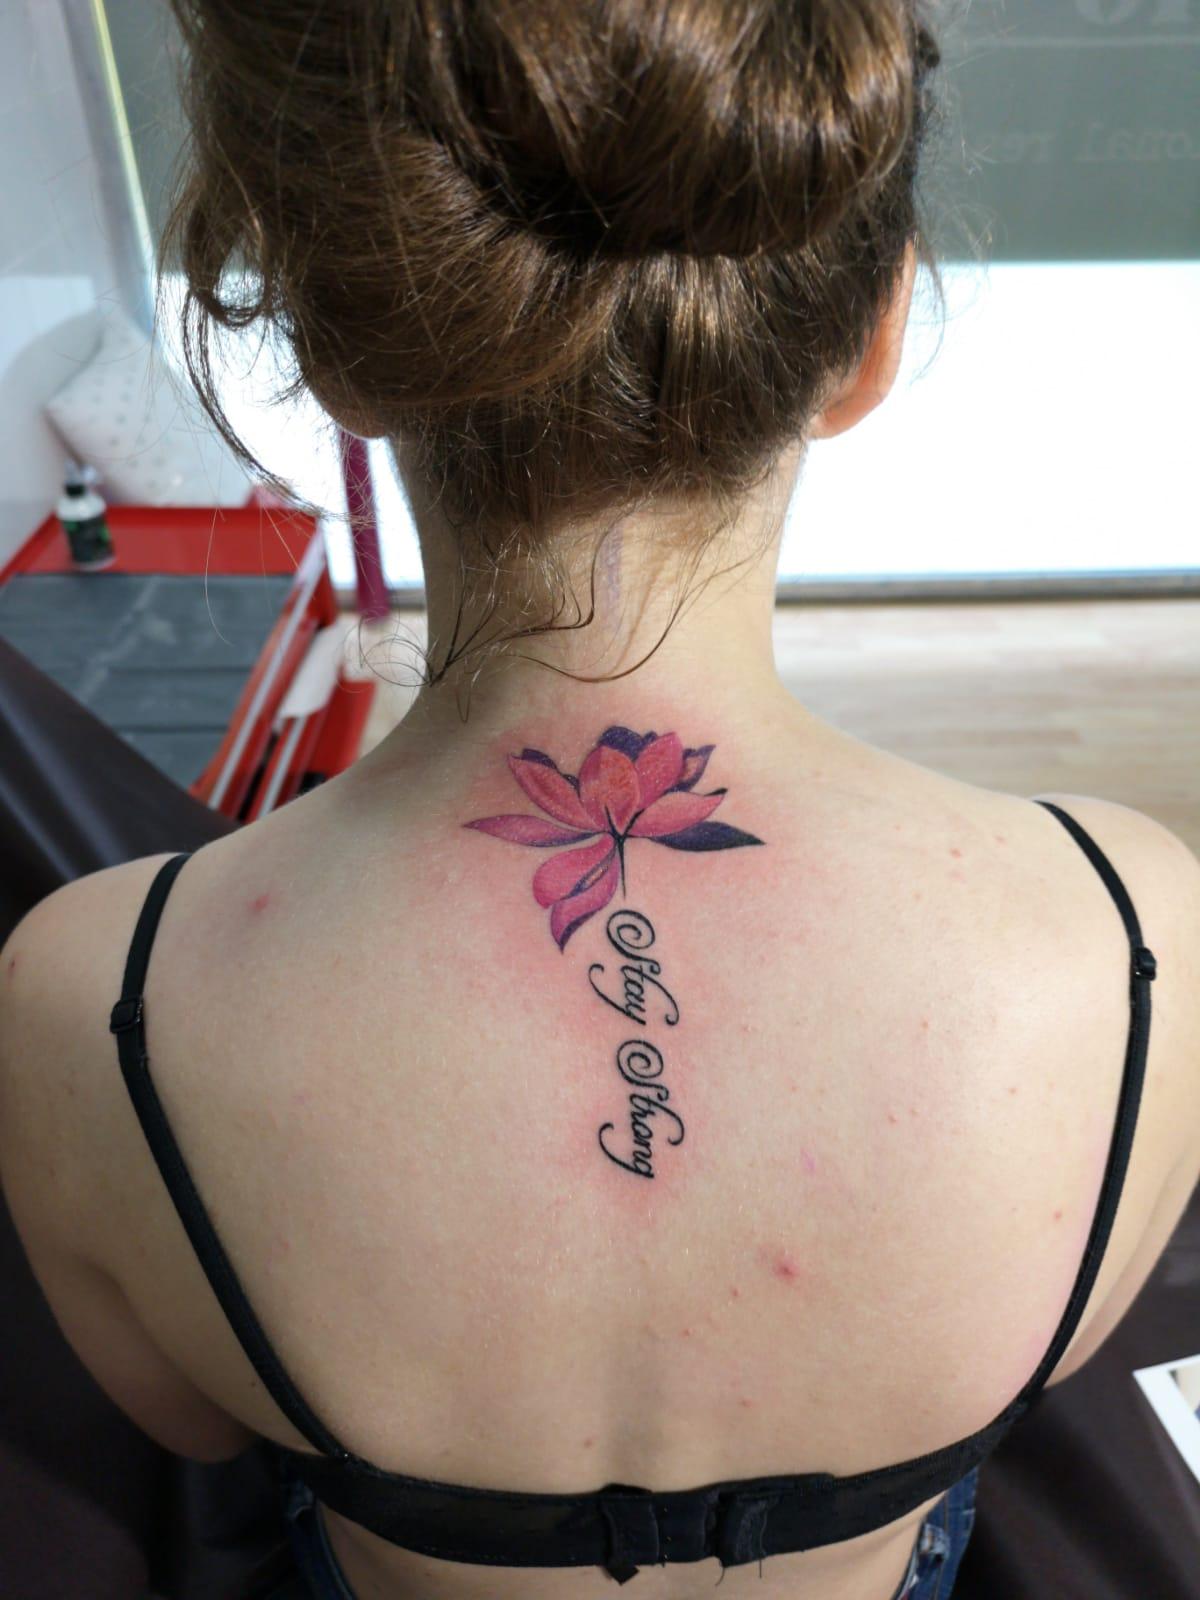 Tatuajes en la espalda. Estudio de tatuajes en Santiago de Compostela